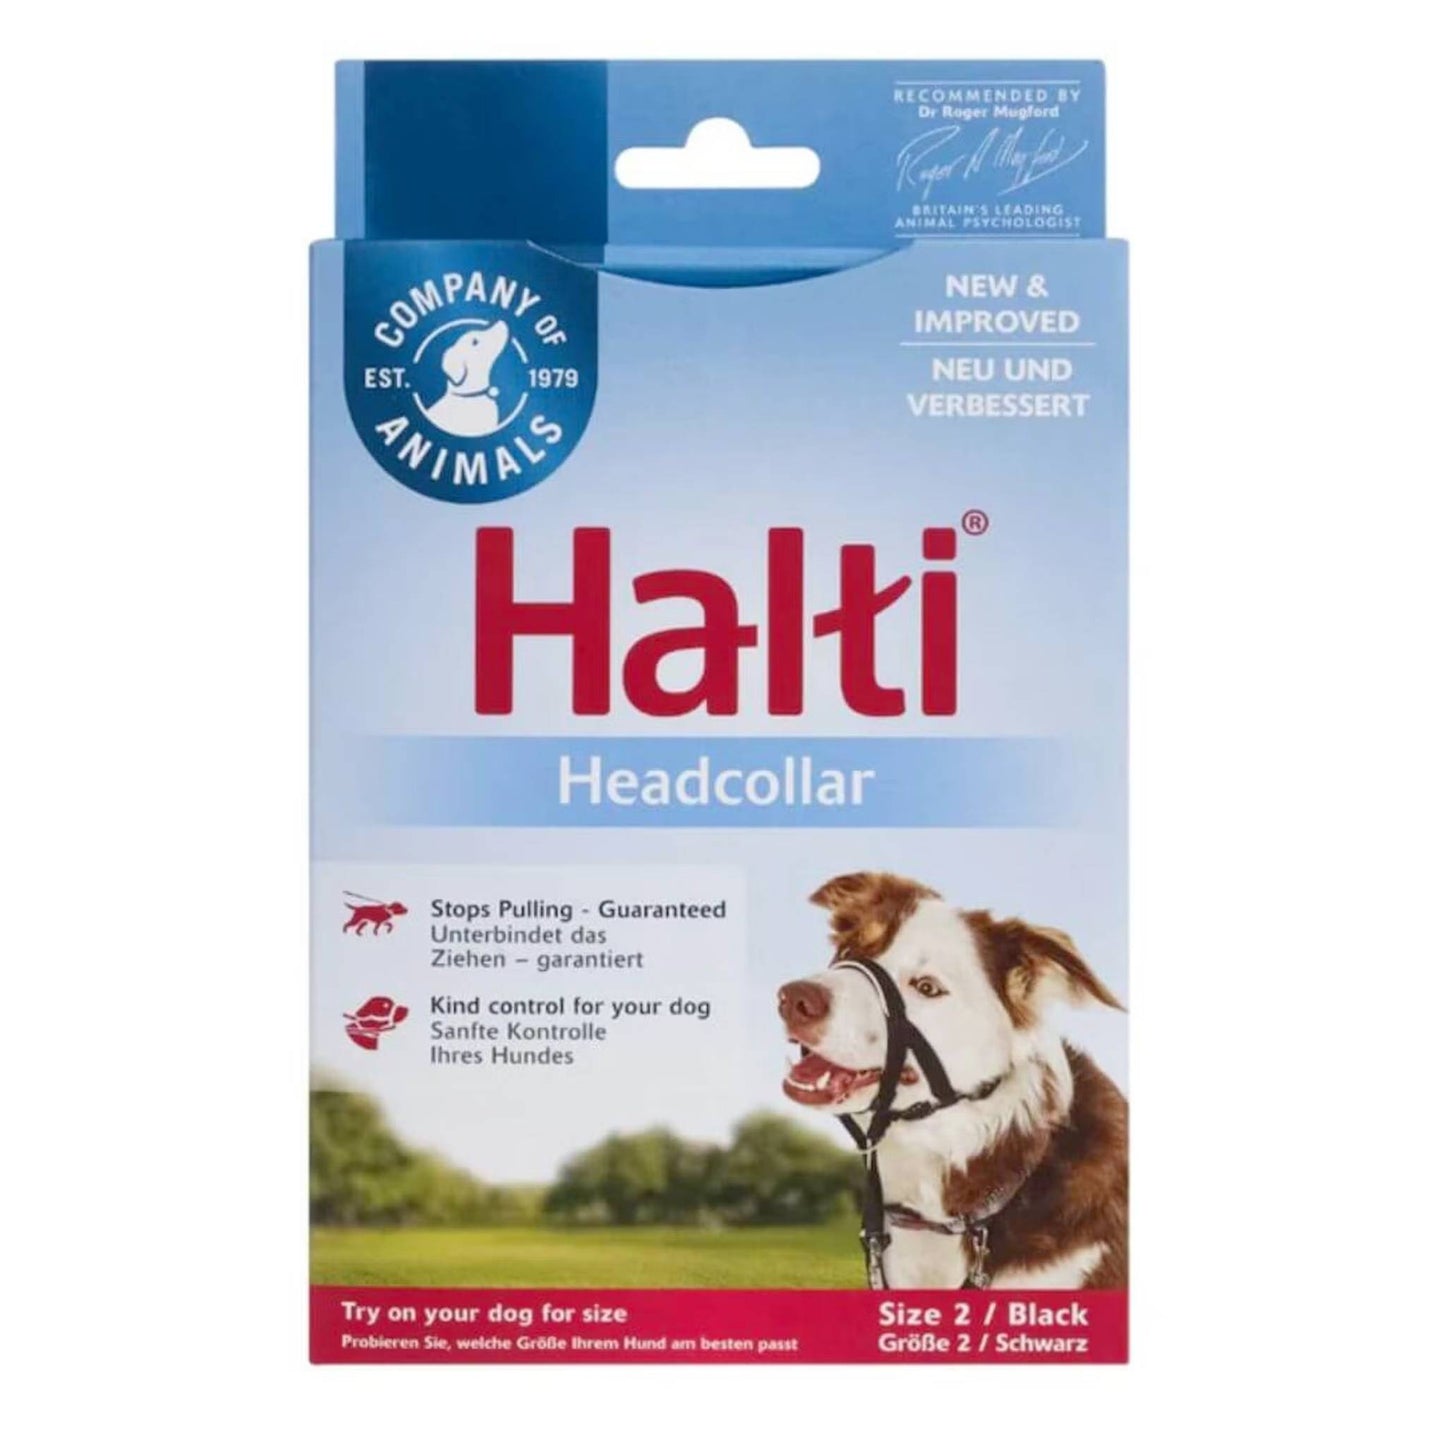 Halti headcollar for dogs size 2